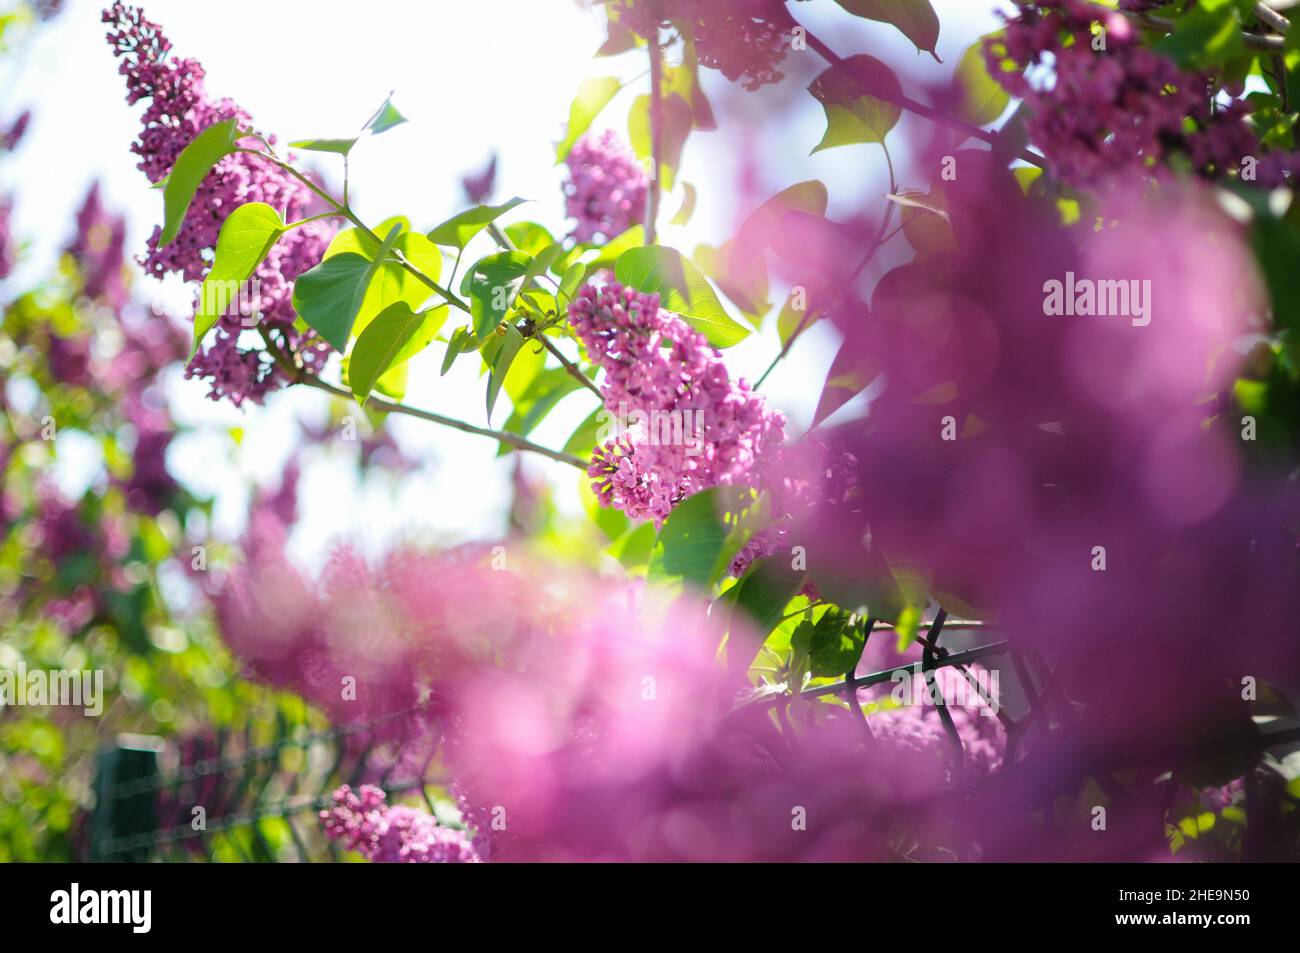 Flores lilas en el árbol. Vista borrosa en primer plano y claridad en el fondo. Foto de stock